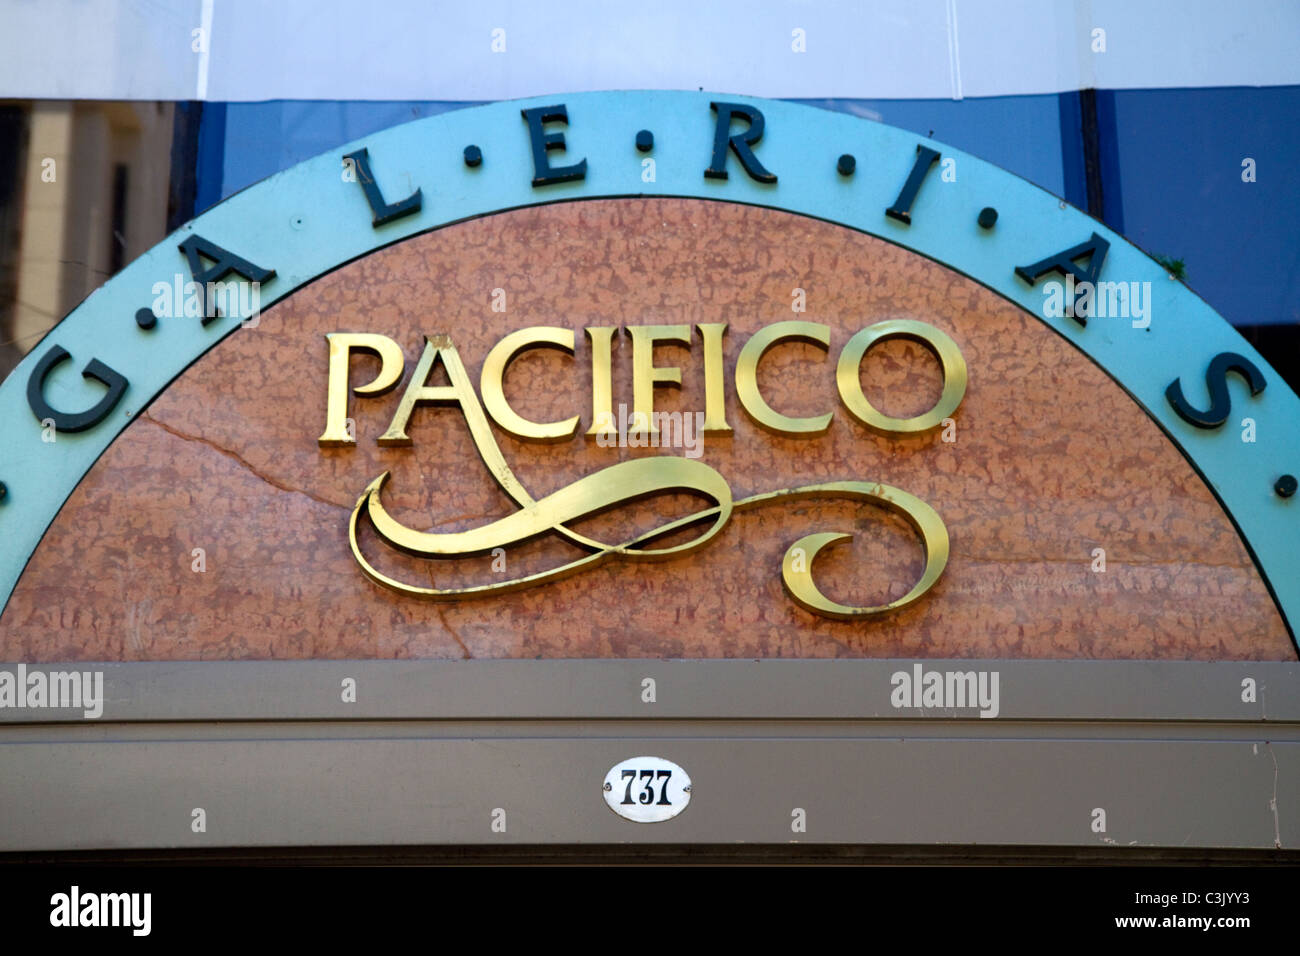 Galerias Pacifico, ein Einkaufszentrum in Buenos Aires, Argentinien. Stockfoto